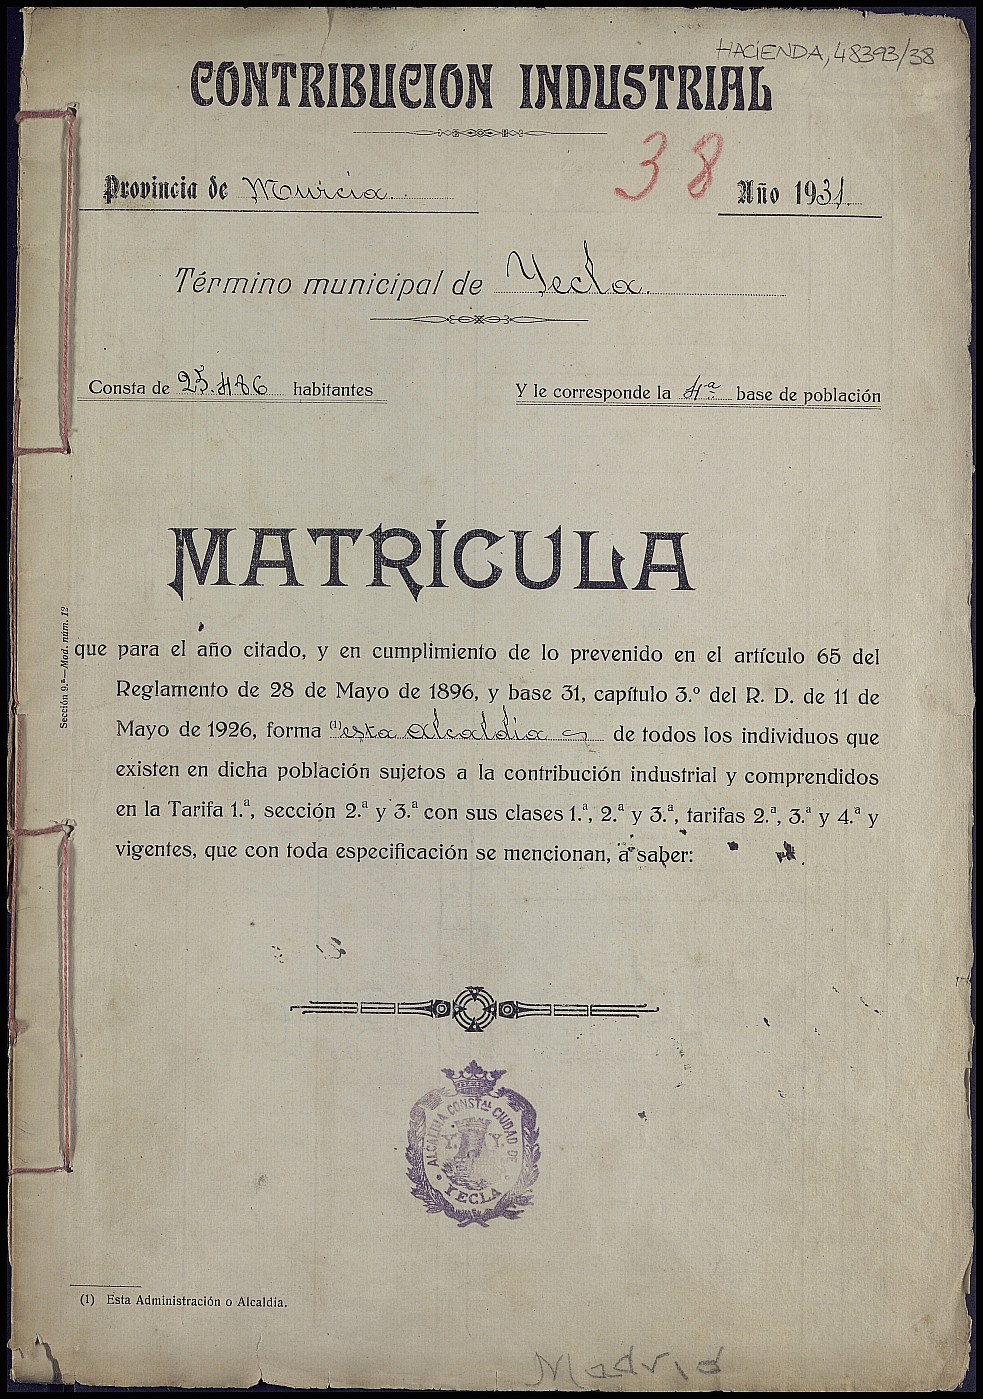 Matrícula de la contribución industrial de Yecla. Año 1931.